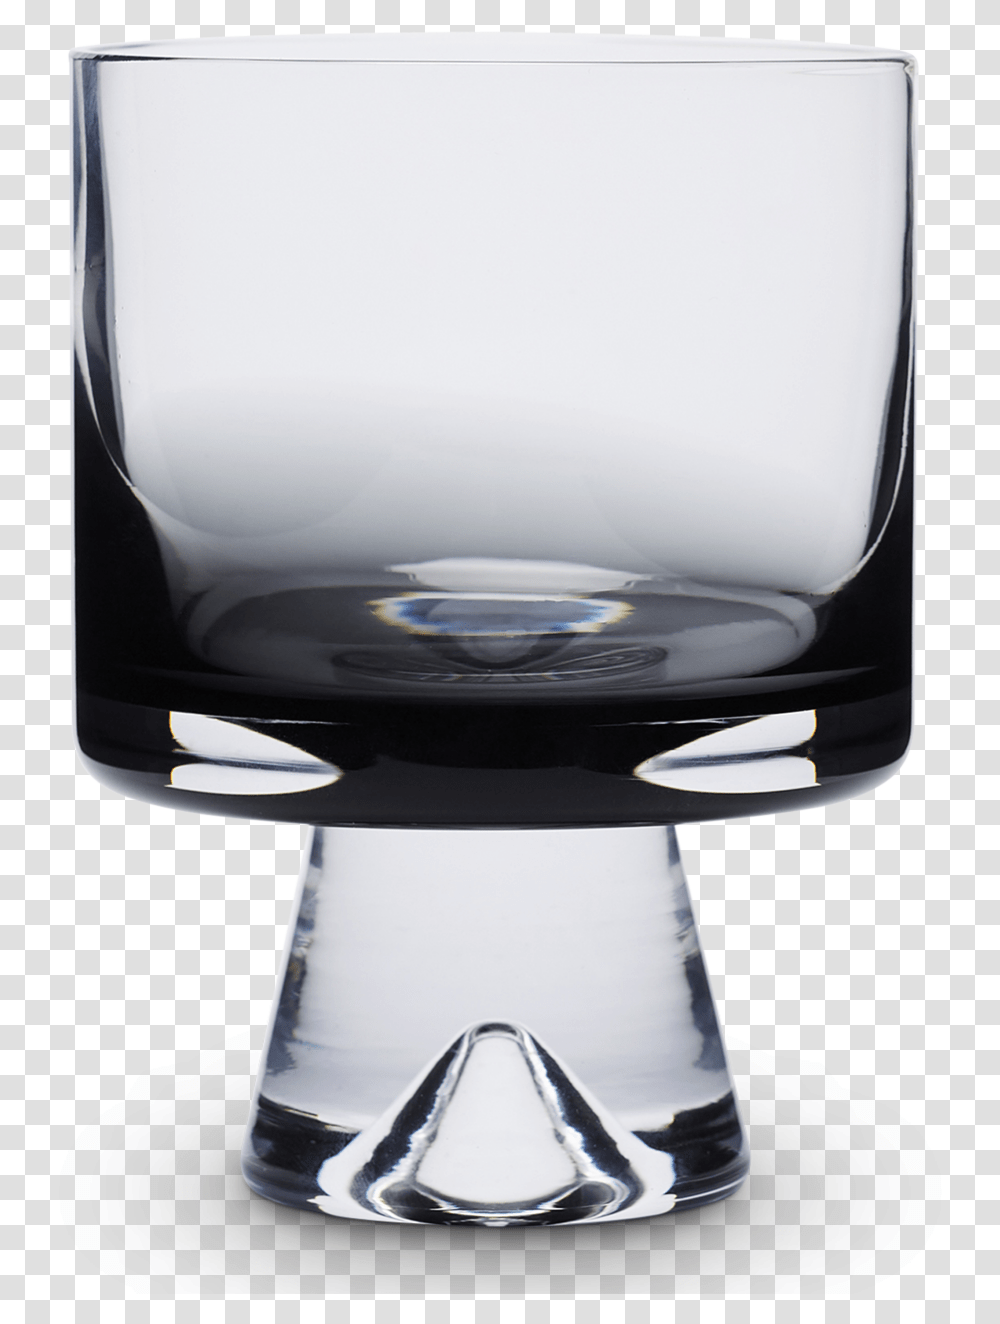 Tank Whiskey Glasses, Jar, Bowl, Goblet, Vase Transparent Png